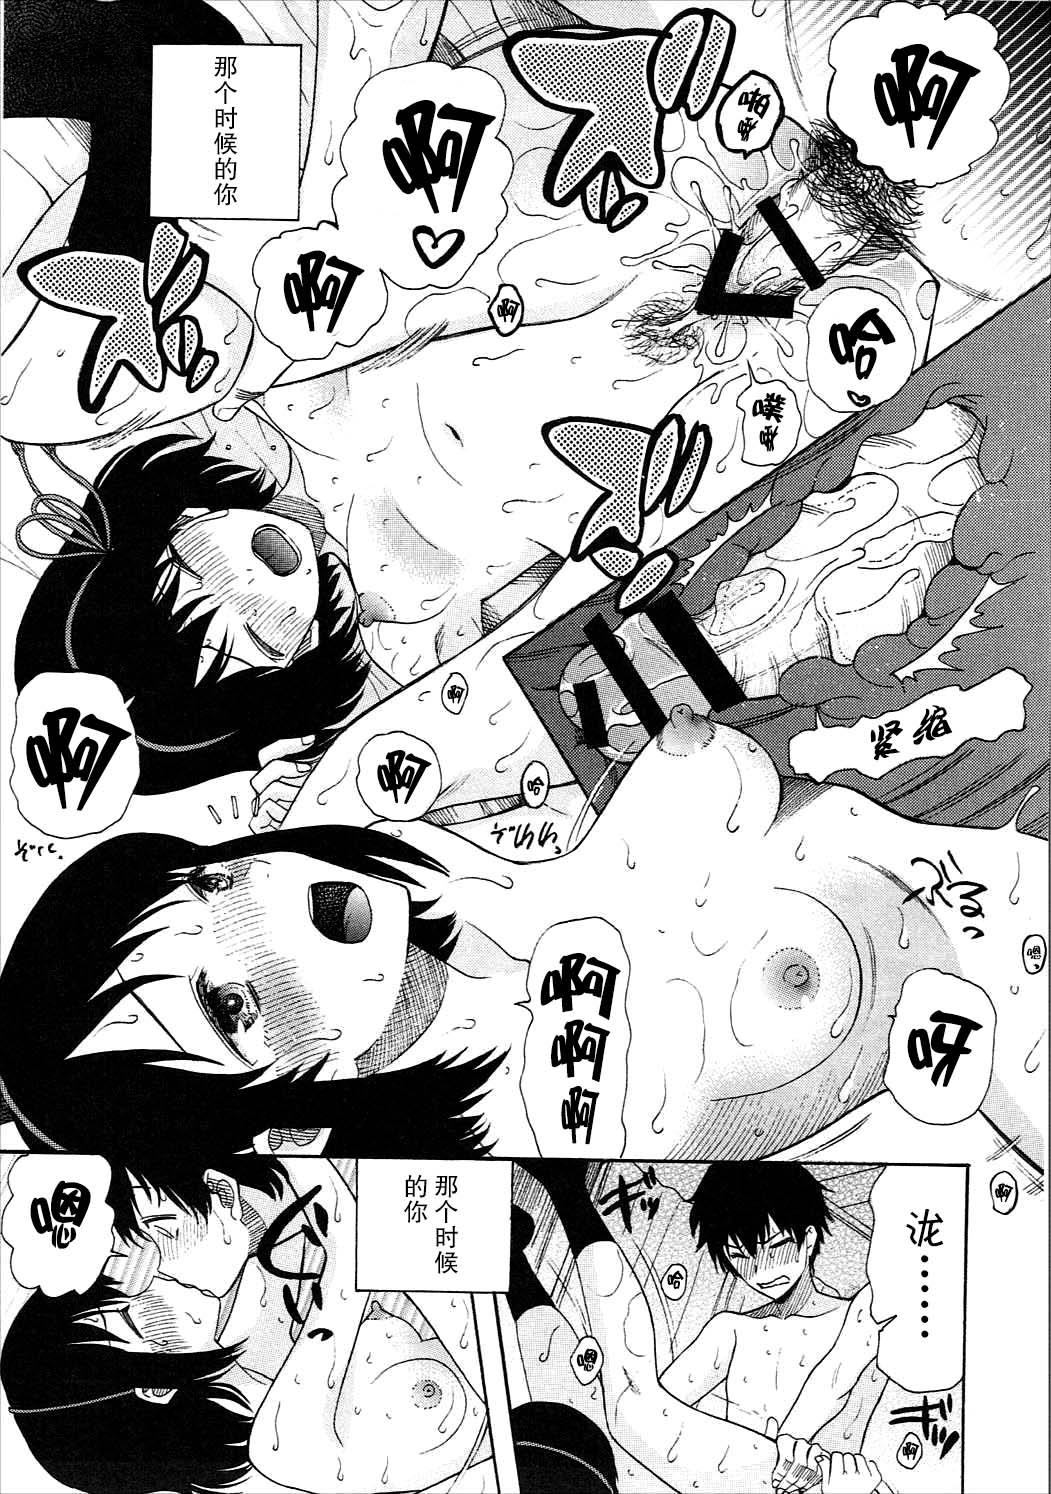 Freaky Futari no Hibi o. - Kimi no na wa. Bokep - Page 12